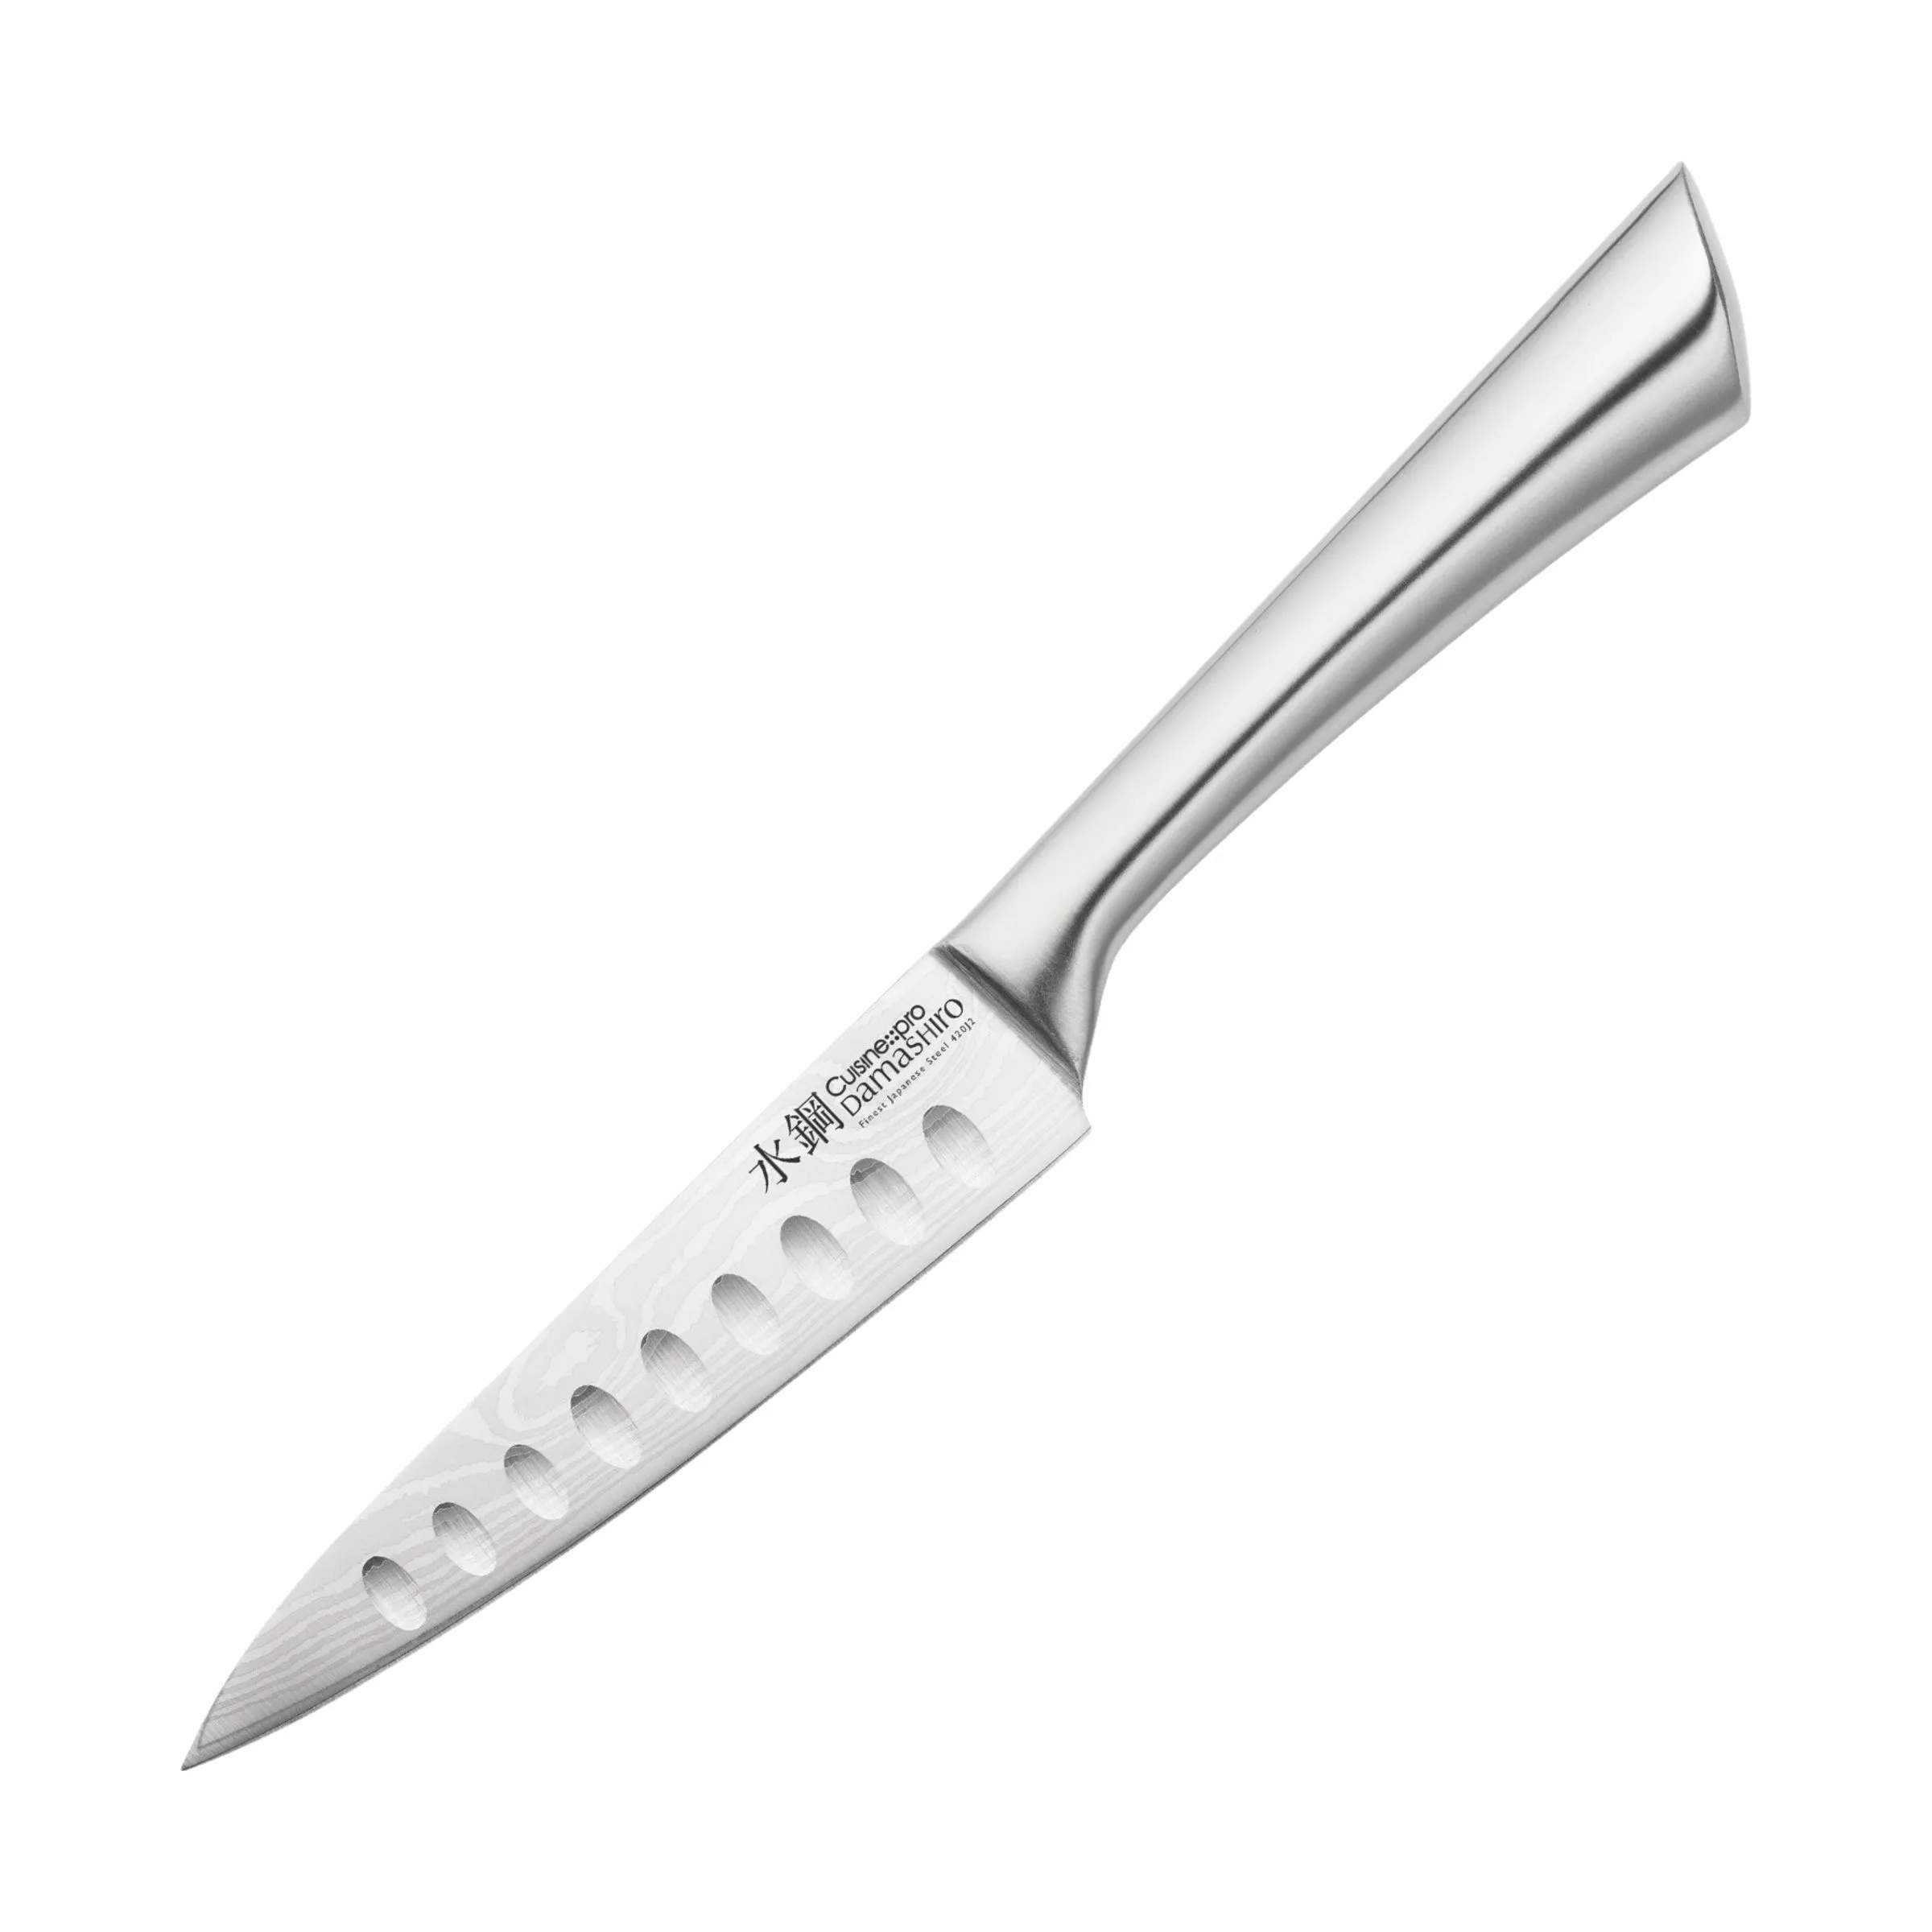 Damashiro® Universalkniv, sølv, large